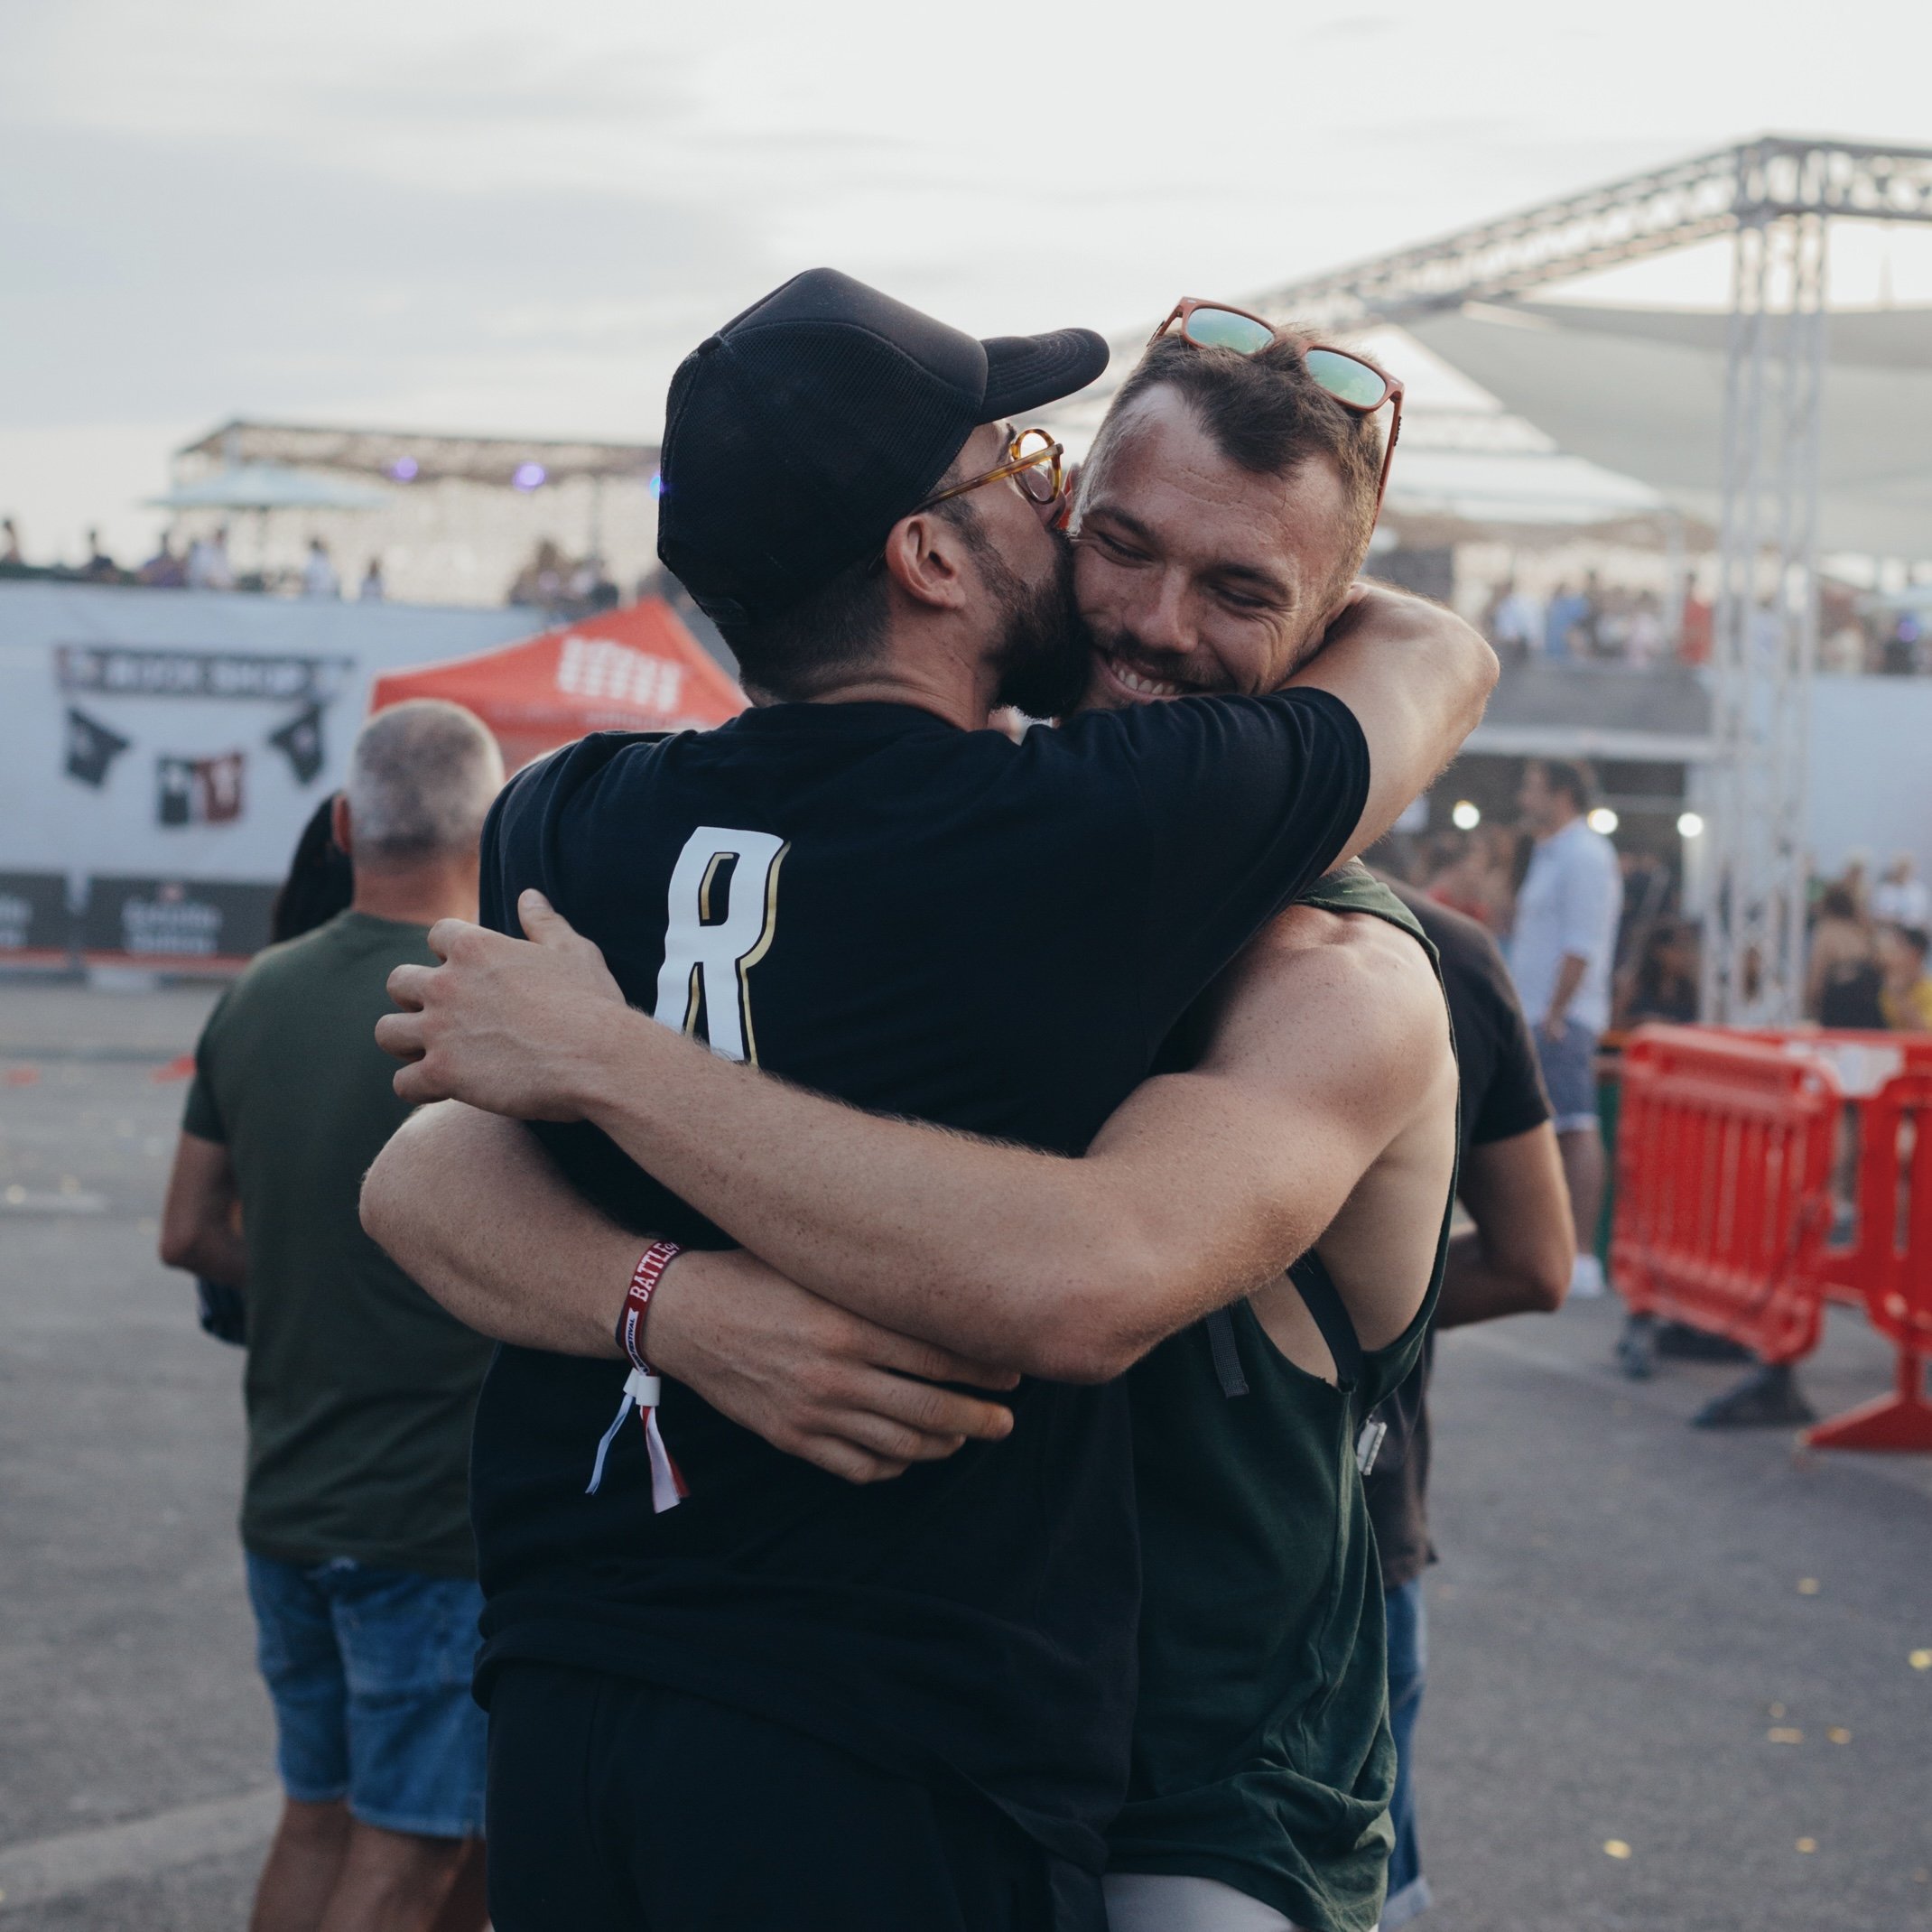 Alejandro abrazando a su novio tras ganar el premio a mejor hamburguesa en la Battle of the Burger Spain 2019.